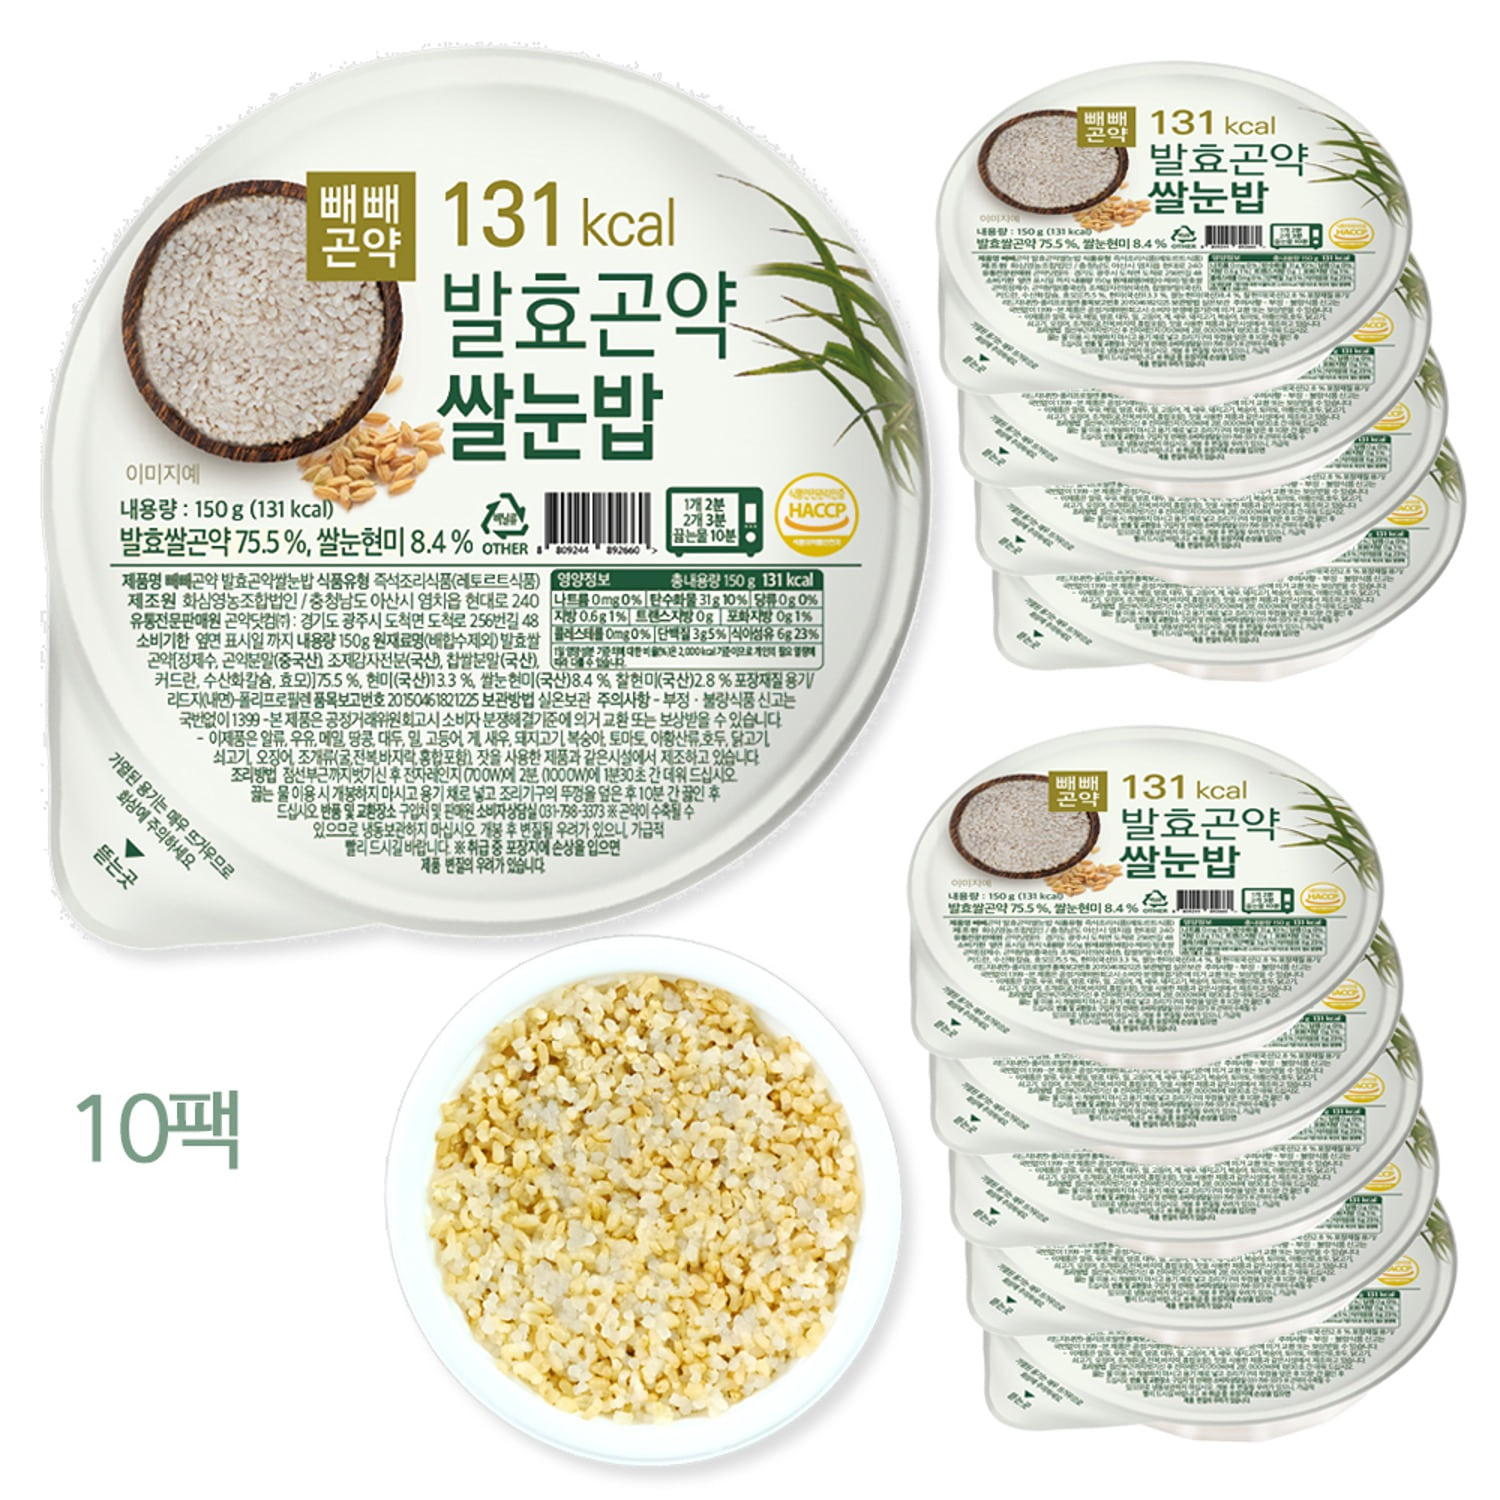 빼빼곤약 발효곤약쌀눈밥 150g x 10팩 - 저칼로리 발효곤약밥에 쌀눈의 효능을 더하다